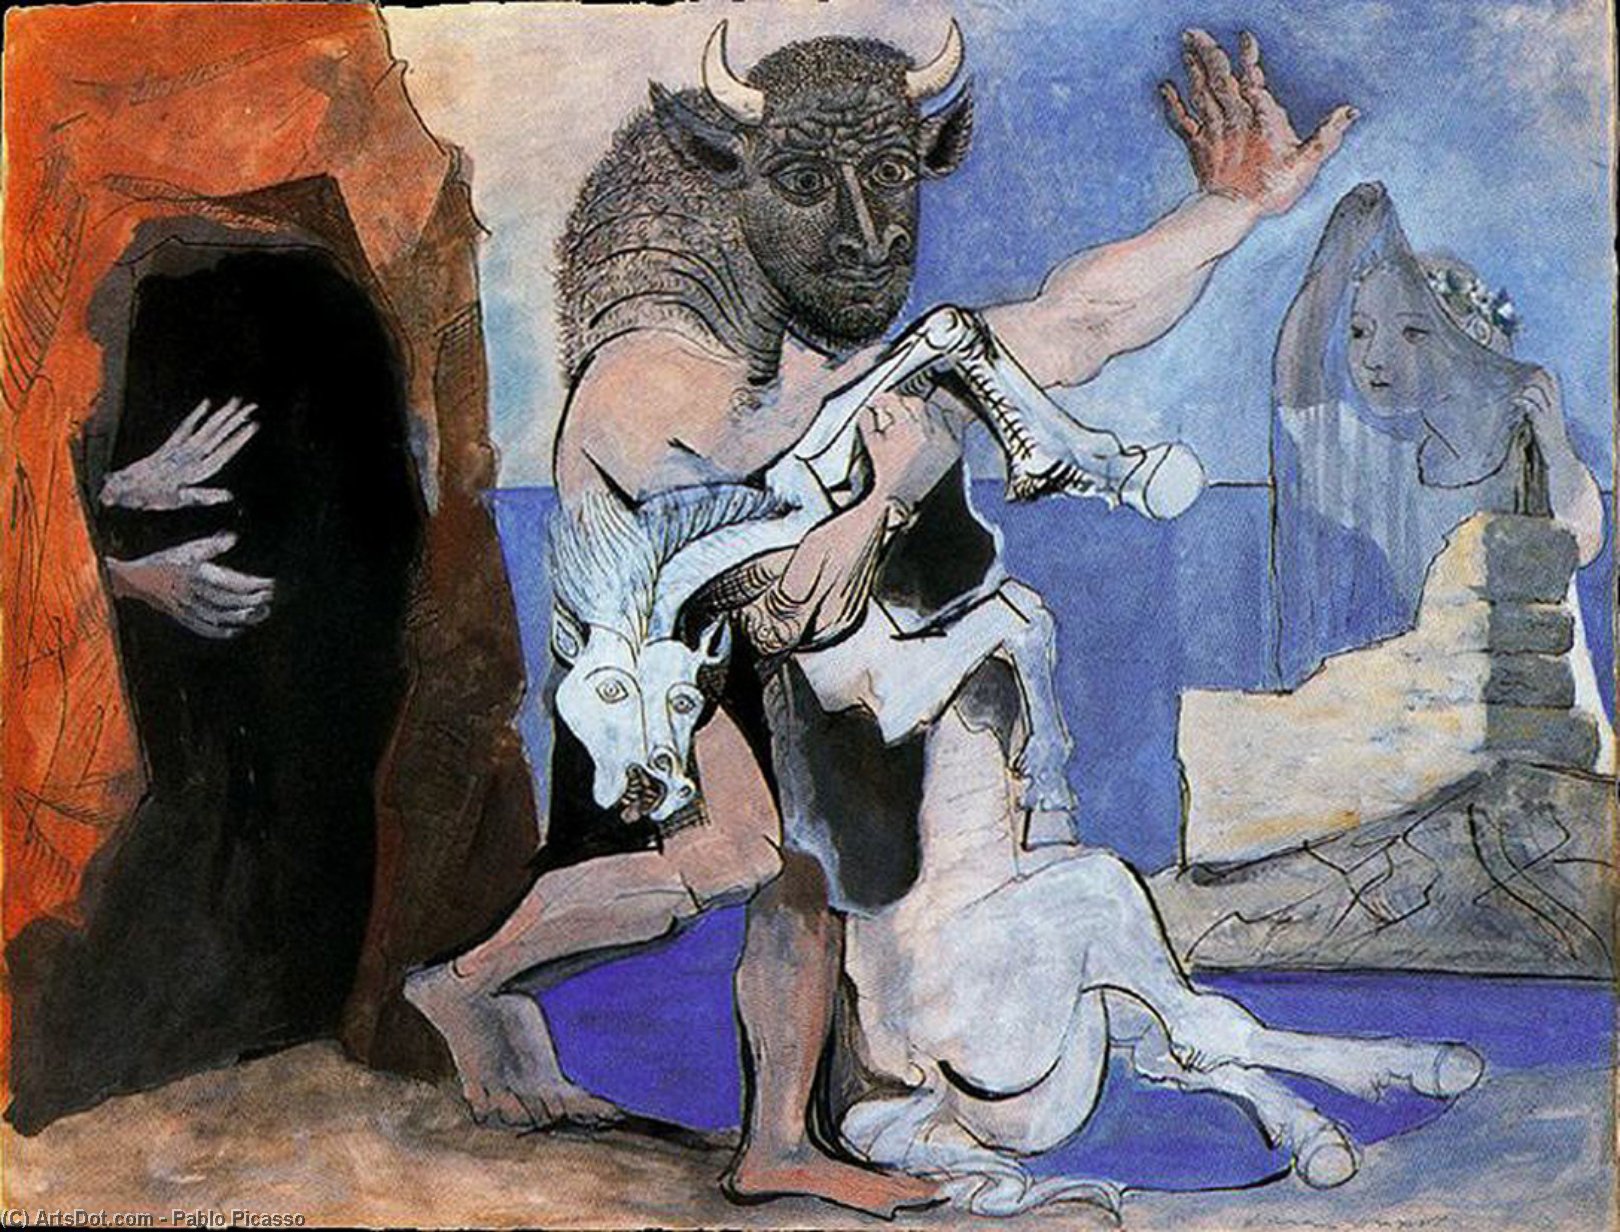 WikiOO.org - אנציקלופדיה לאמנויות יפות - ציור, יצירות אמנות Pablo Picasso - Minotauro y yegua muerta delante de una gruta y niña con velo